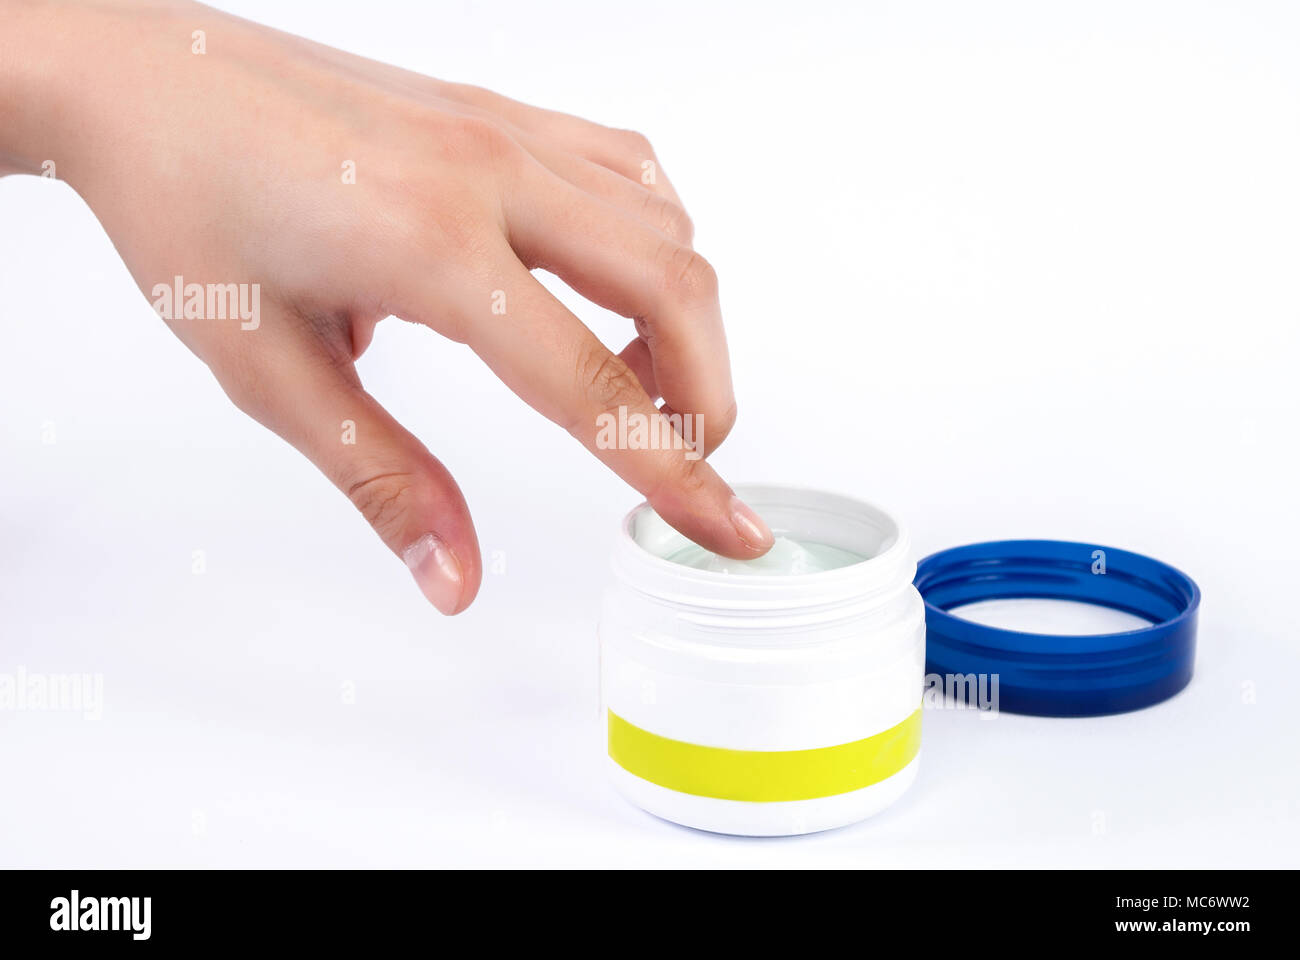 Delicato mano femmina mette il dito in una ciotola di crema per il viso Foto Stock